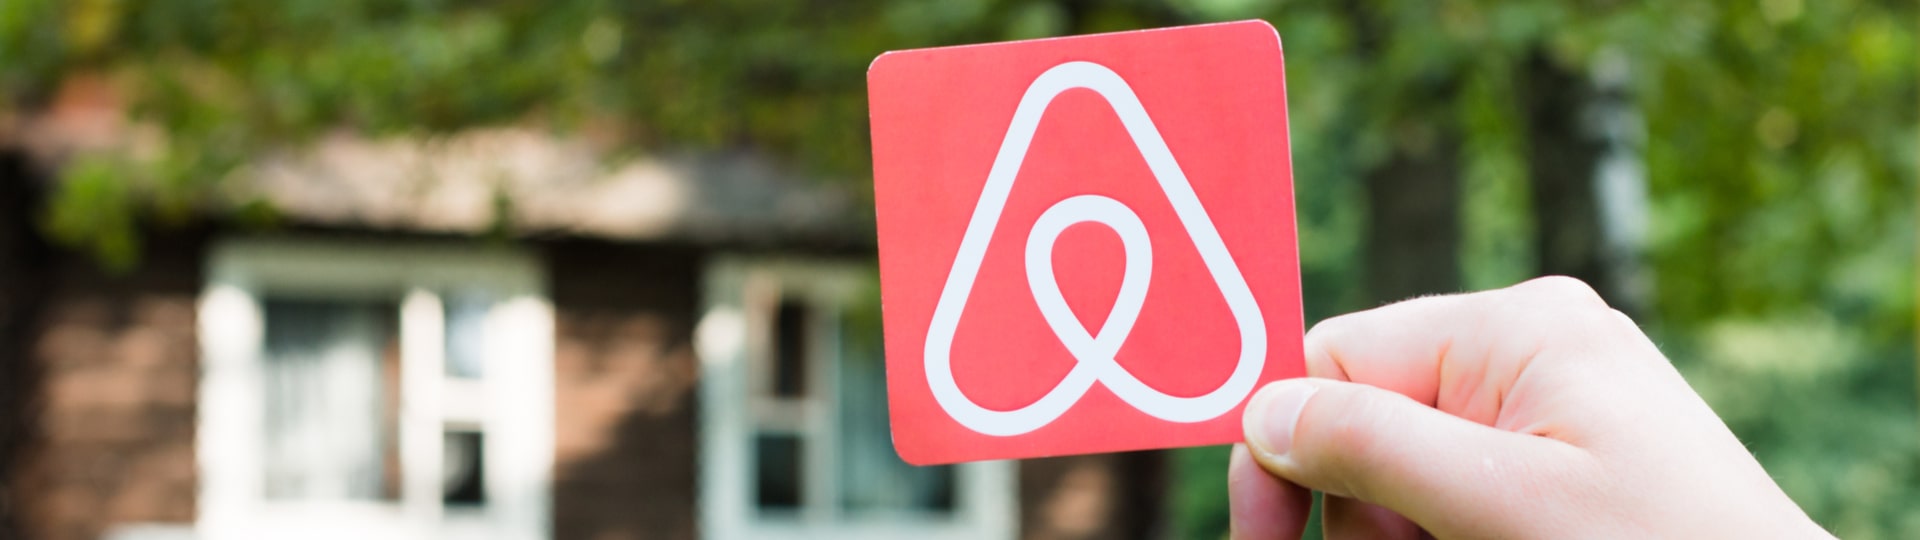 Airbnb se dostalo do zisku